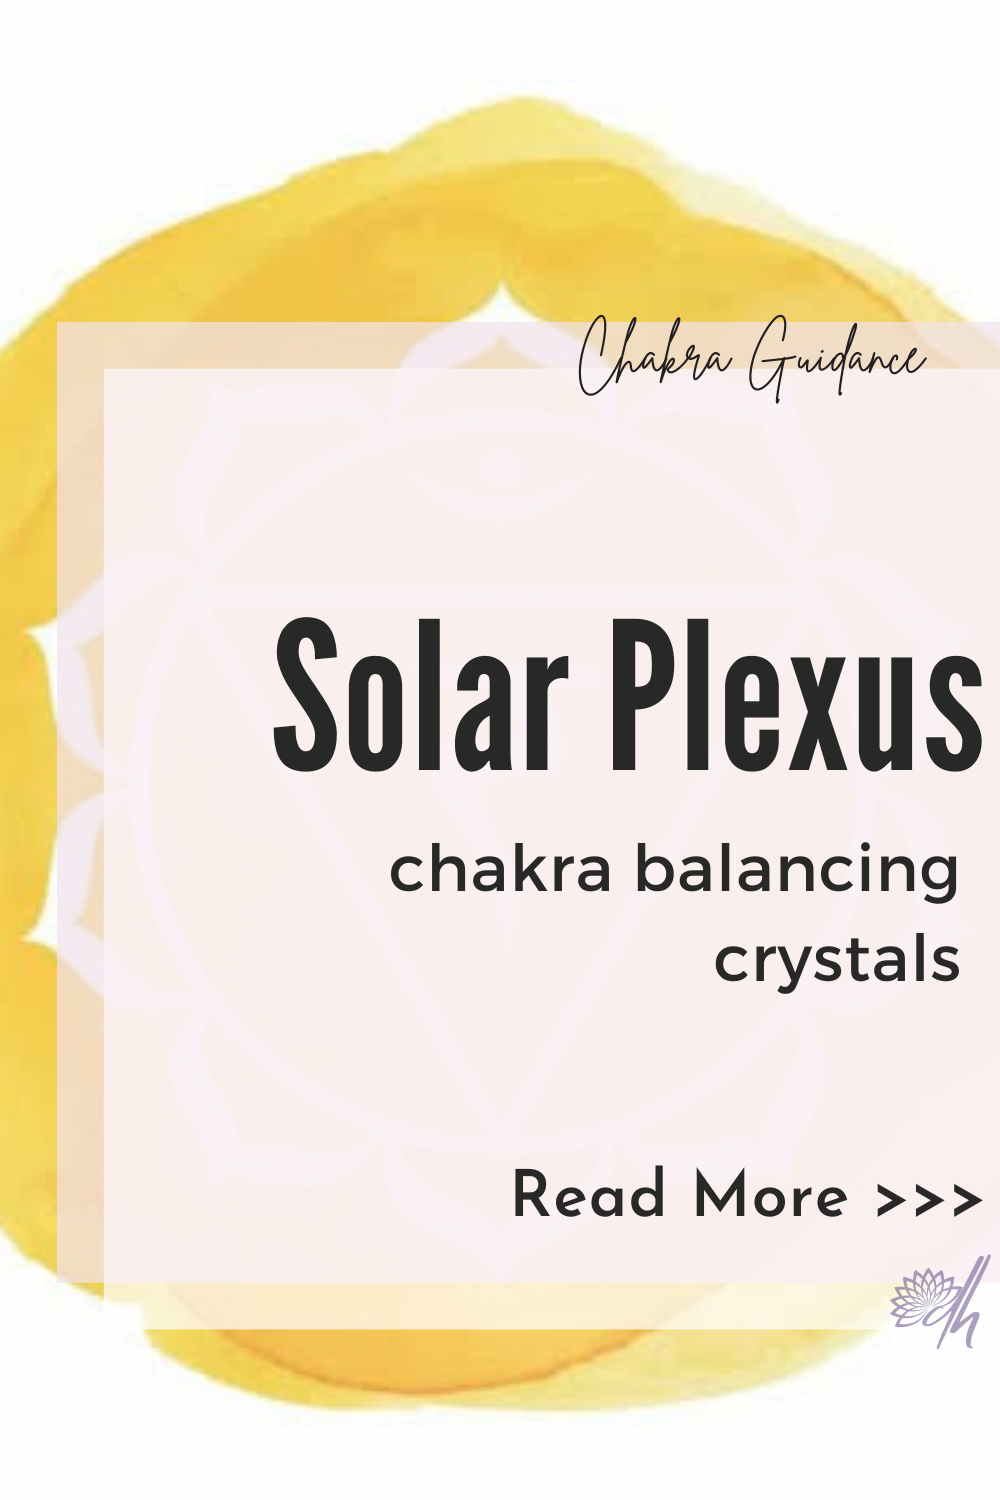 yellow symbol for solar plexus chakra balancing crystals 